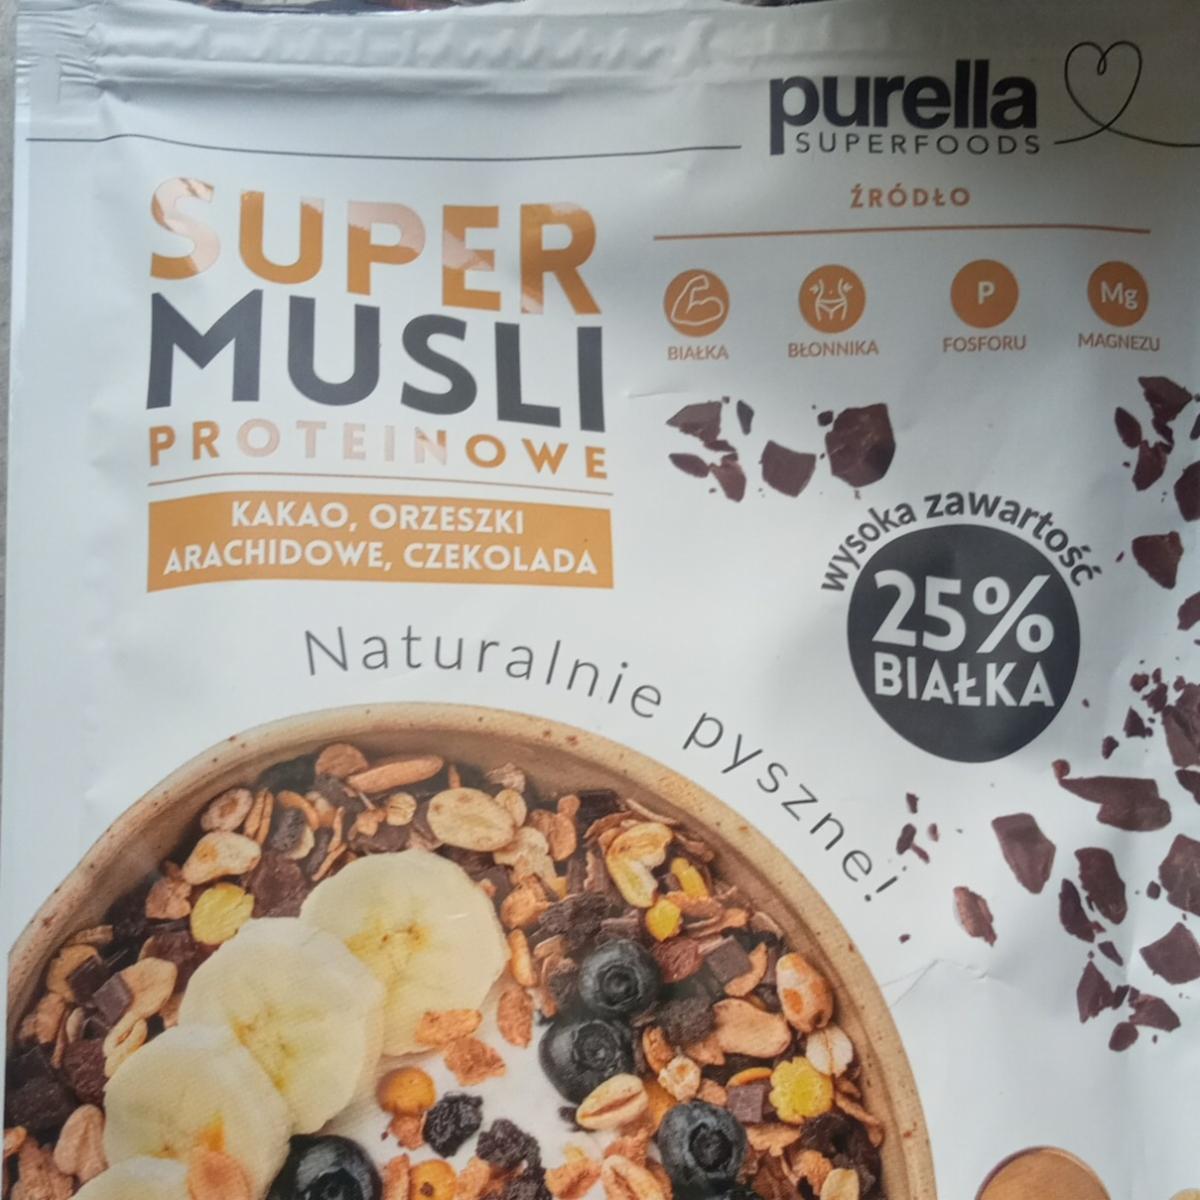 Zdjęcia - Super musli proteinowe kakao, orzeszki arachidowe, czekolada Purella Superfoods